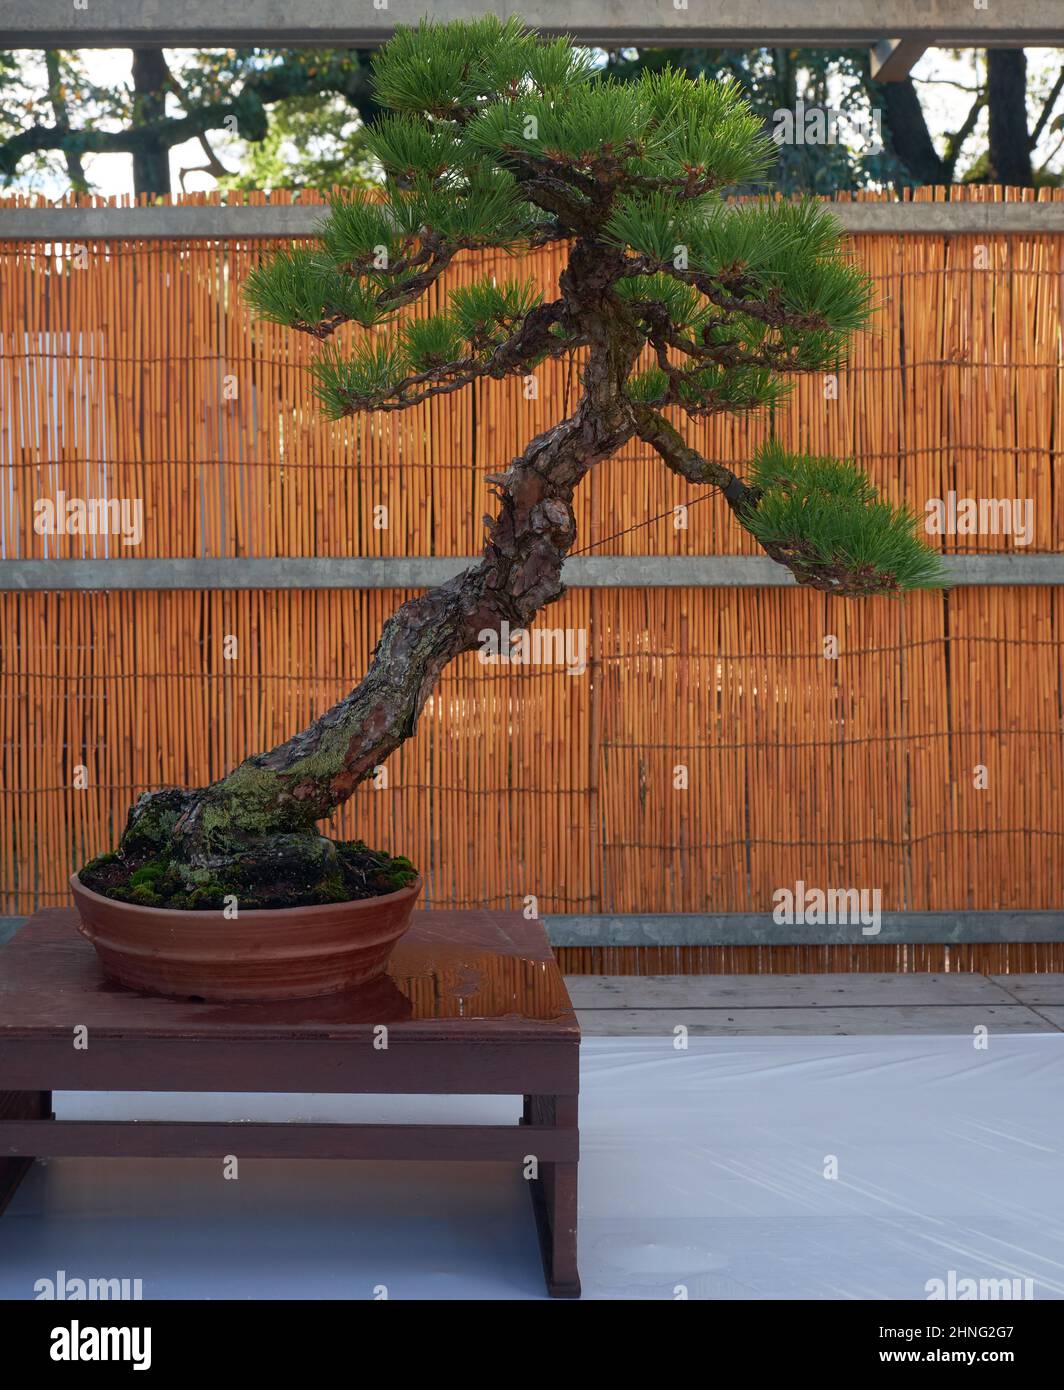 Nagoya, Japon - 20 octobre 2019 : vue sur l'arbre bonsaï décoratif de PIN noir de Japanes lors du spectacle annuel du château de Nagoya Bonsai. Nagoya. Japon Banque D'Images